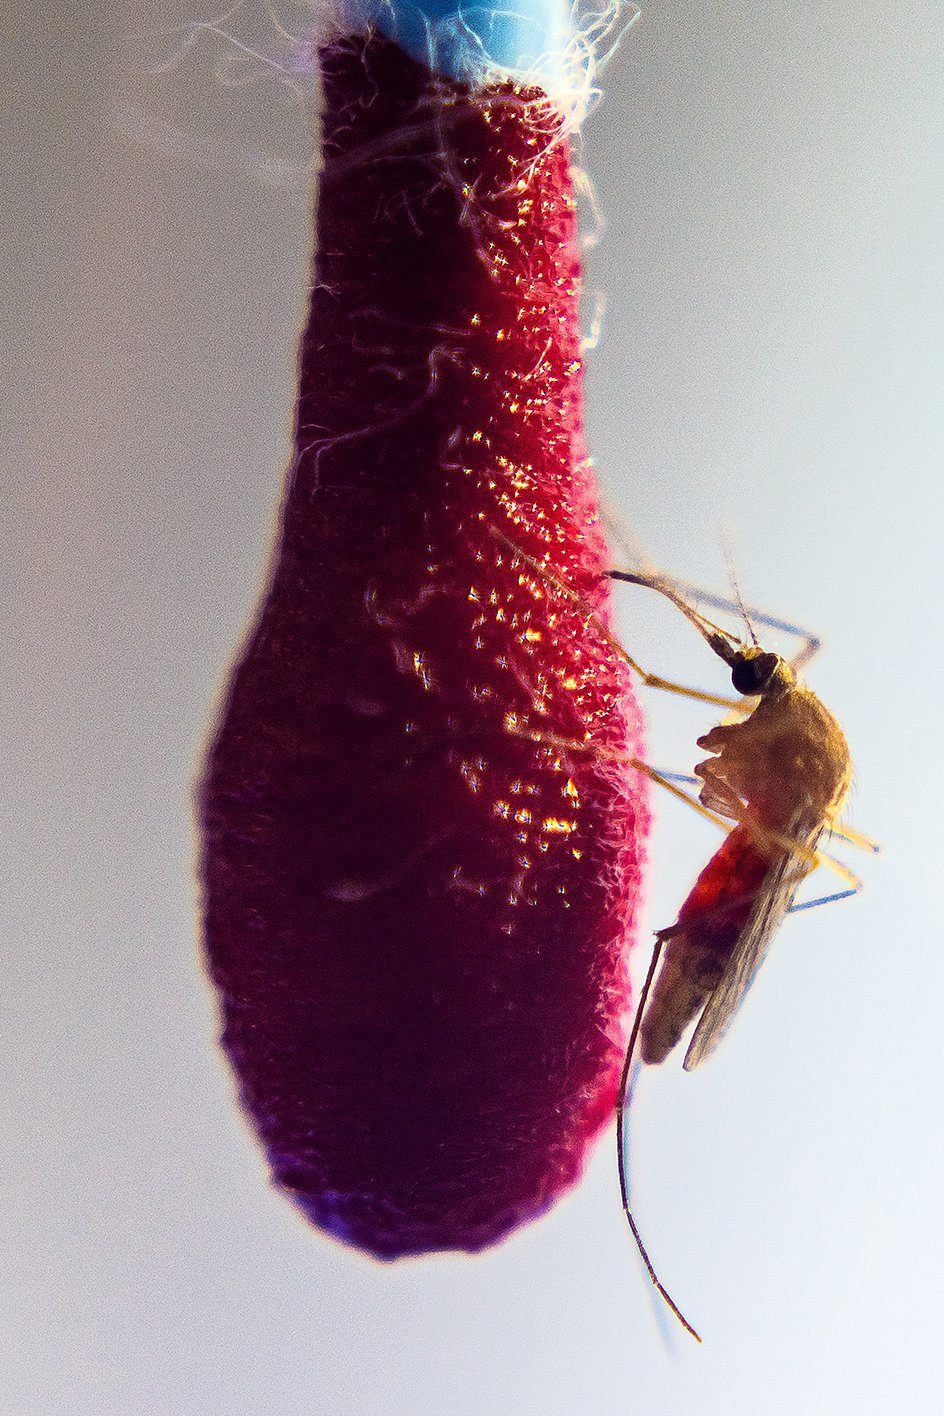 Gemeine Hausmücke (Culex pipiens) seitlich bei der Blutmahlzeit an einem rot getränkten Wattestäbchen